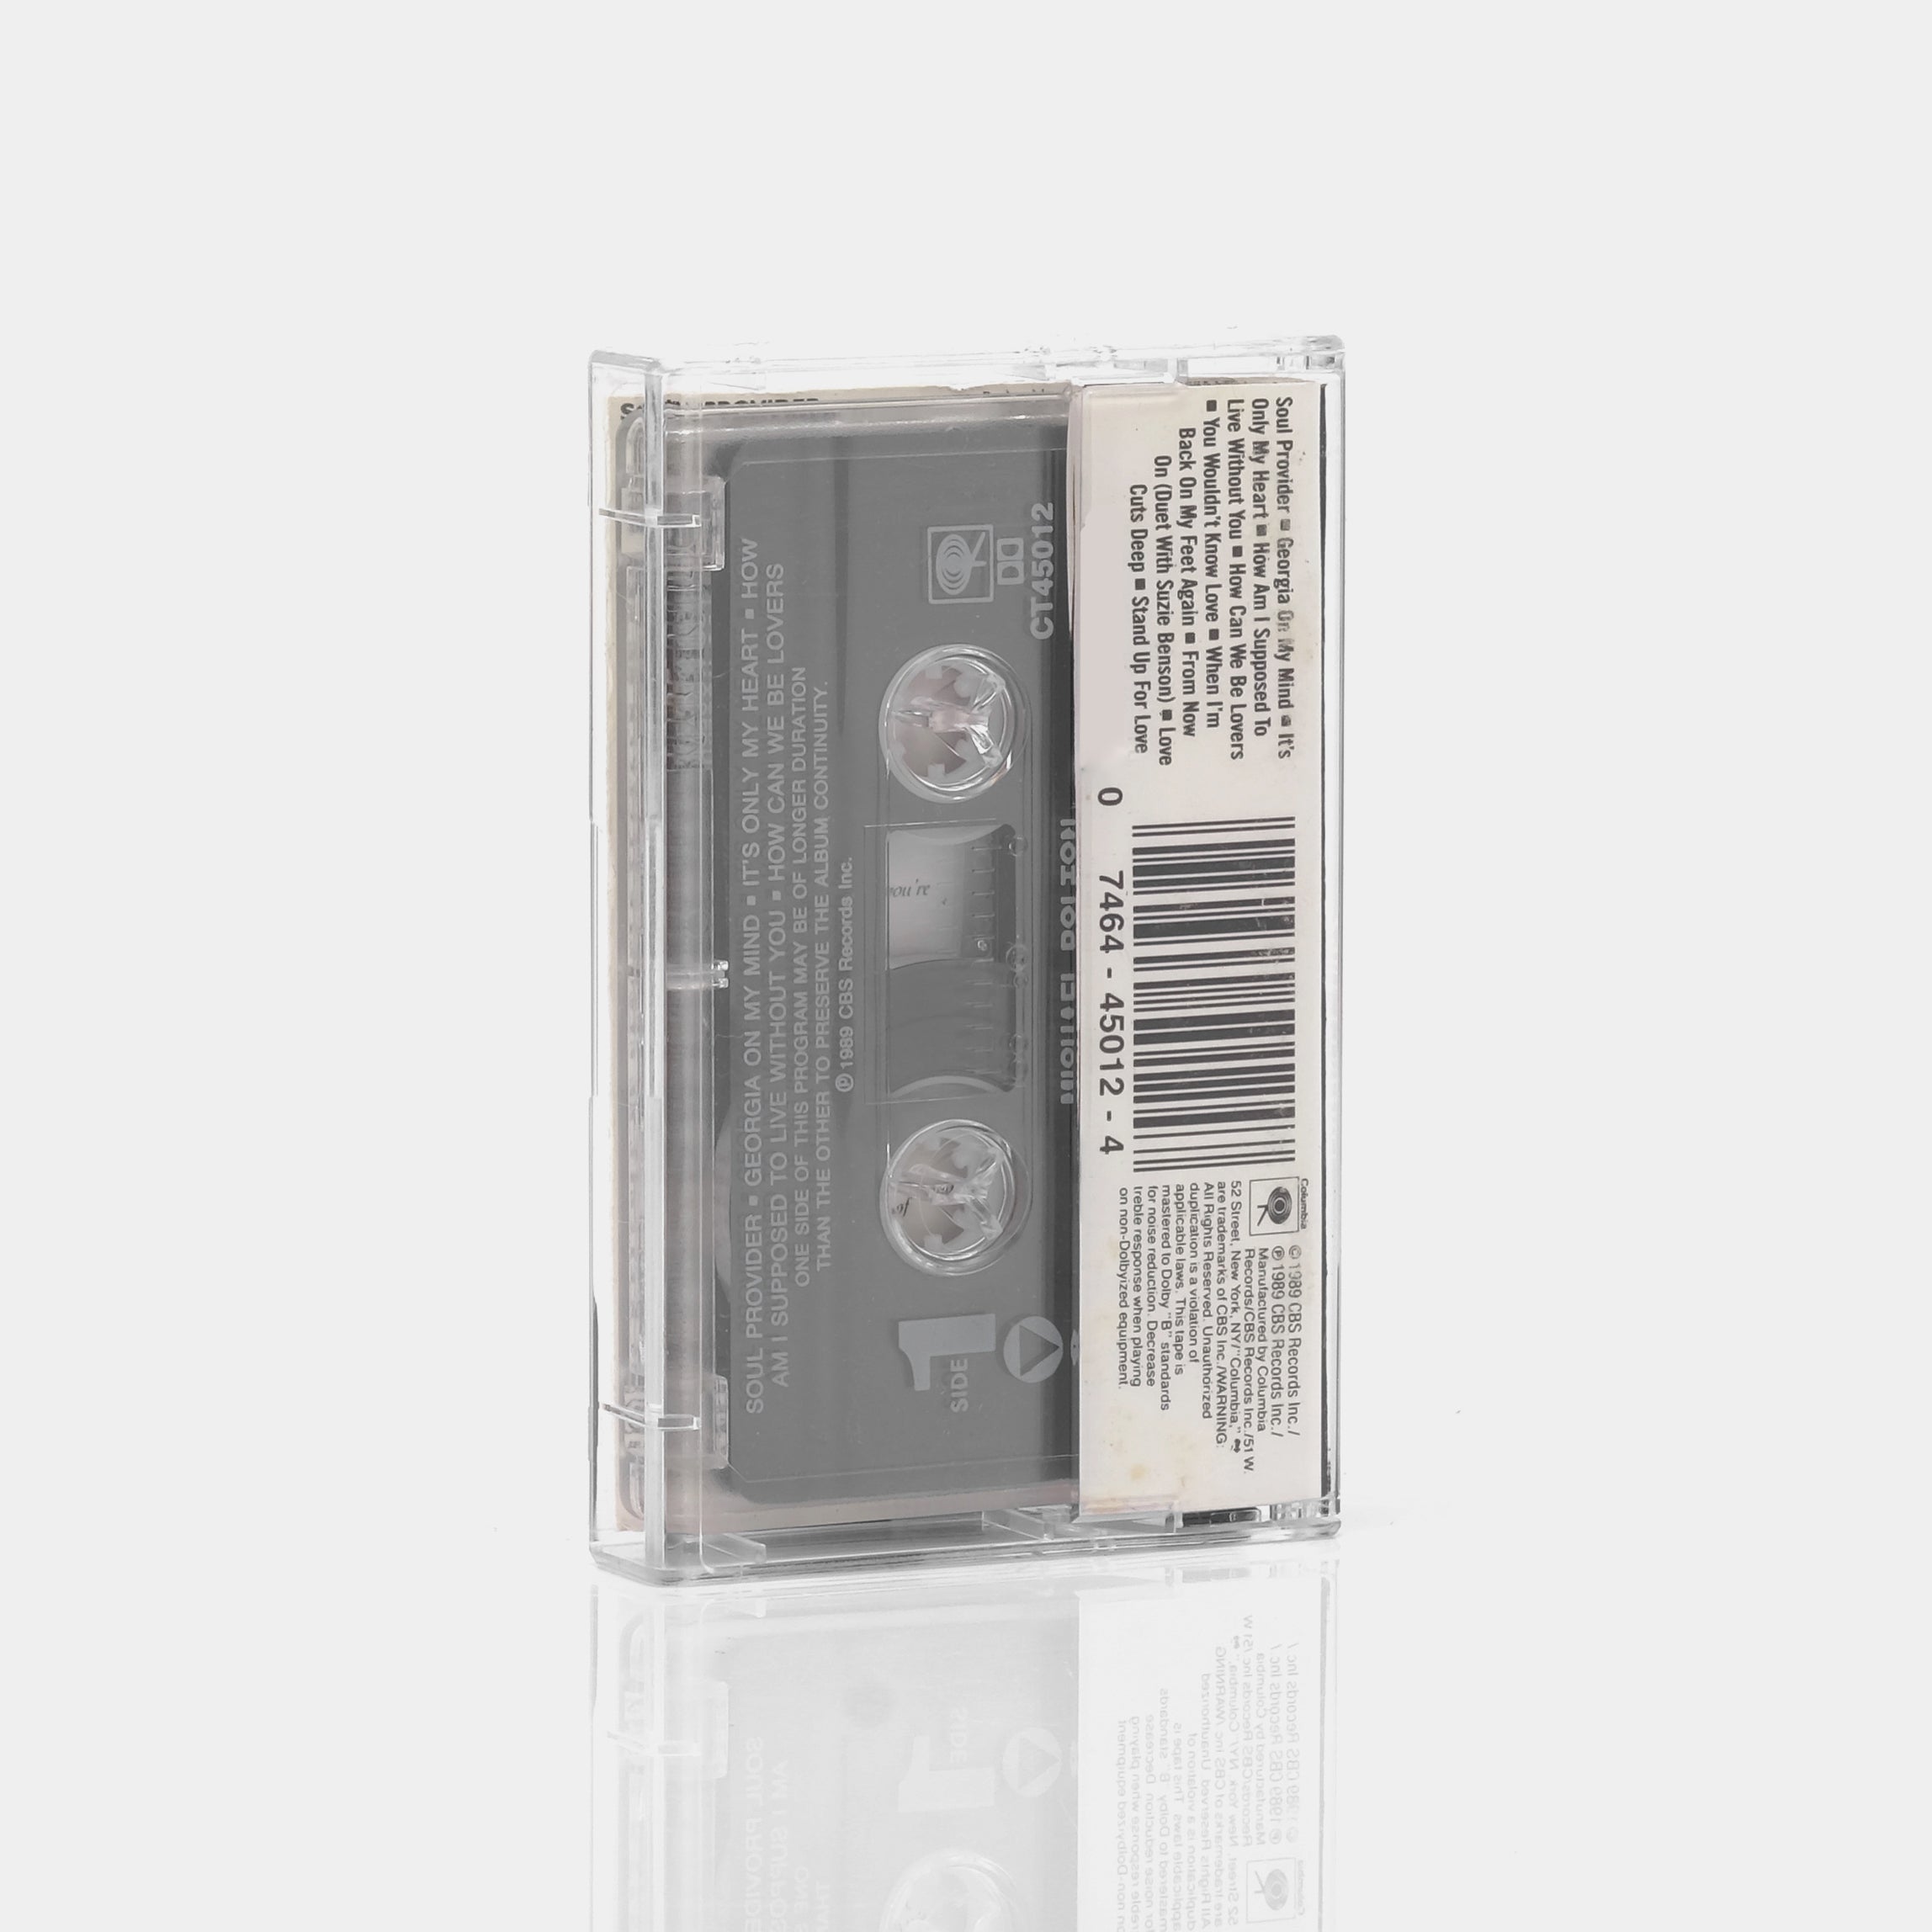 Michael Bolton - Soul Provider Cassette Tape